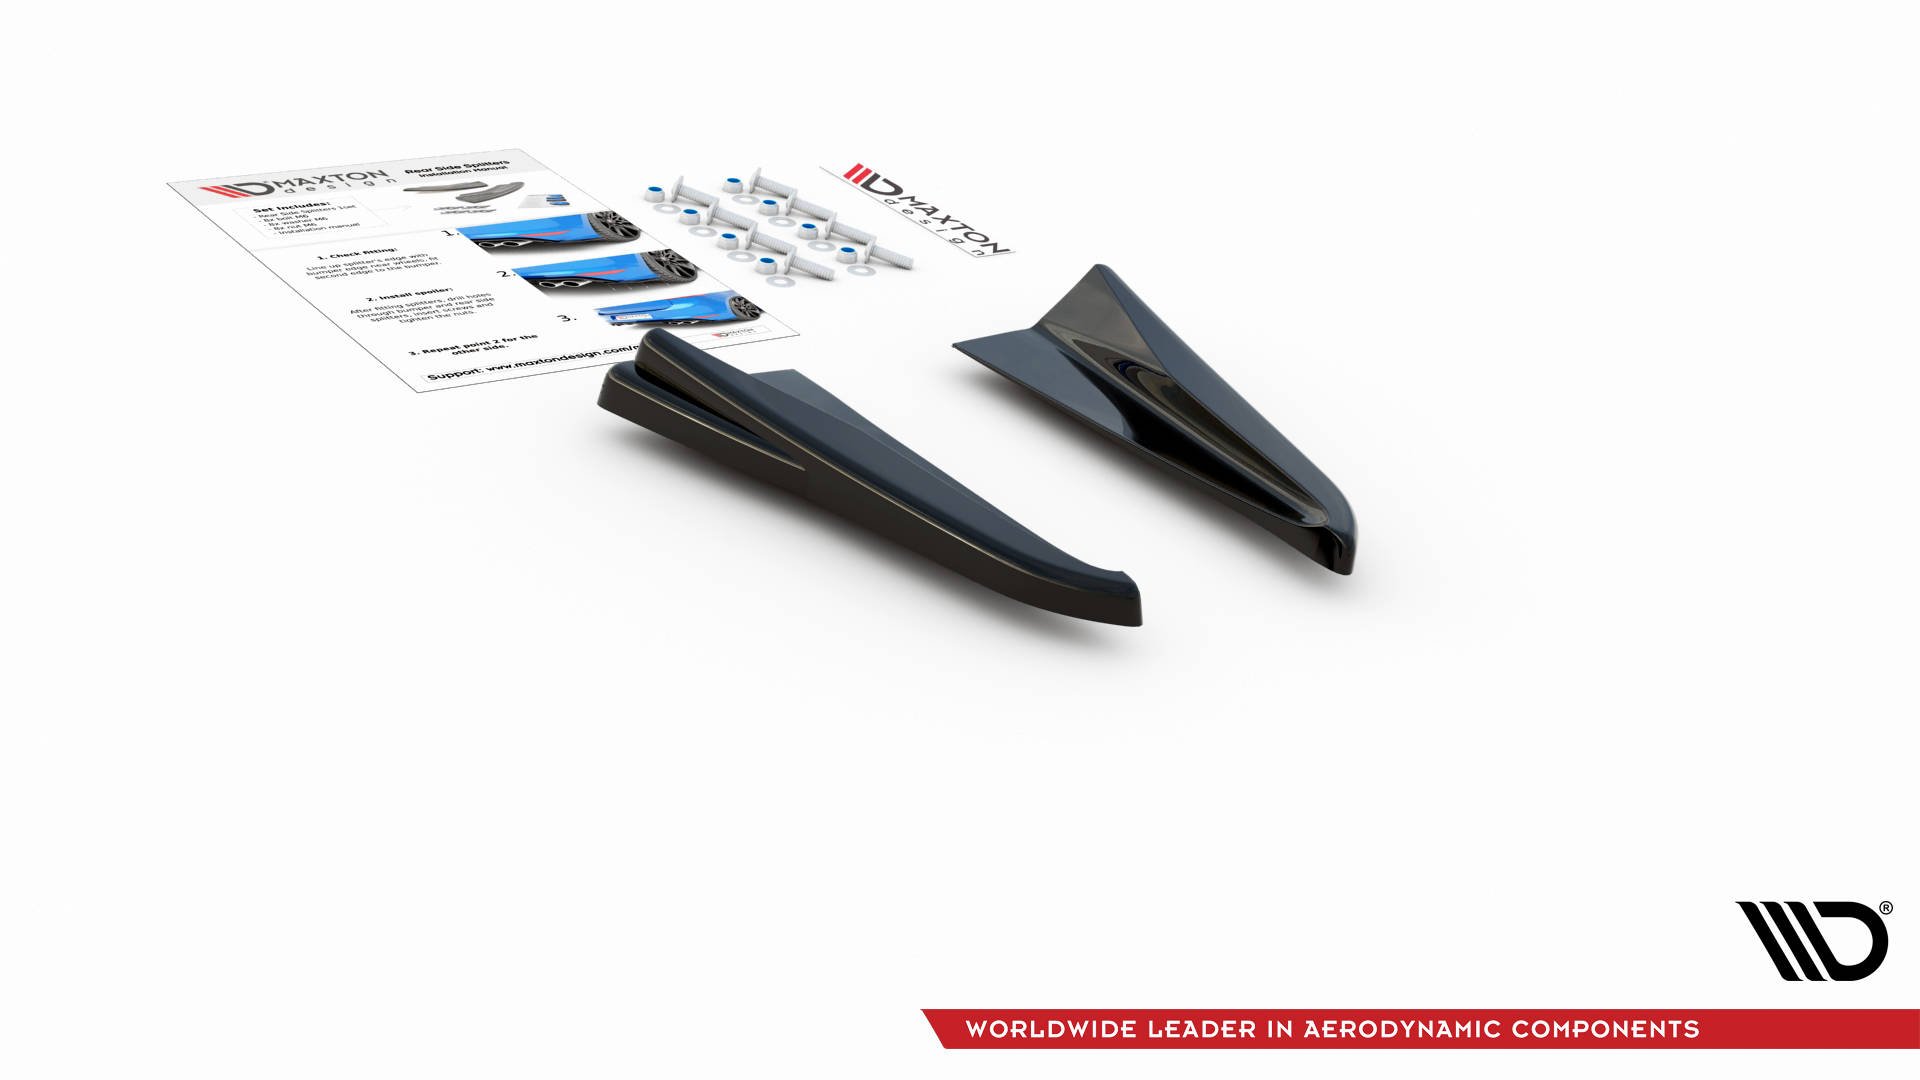 Maxton Design Heck Ansatz Flaps Diffusor für Audi RSQ3 F3 schwarz Hochglanz